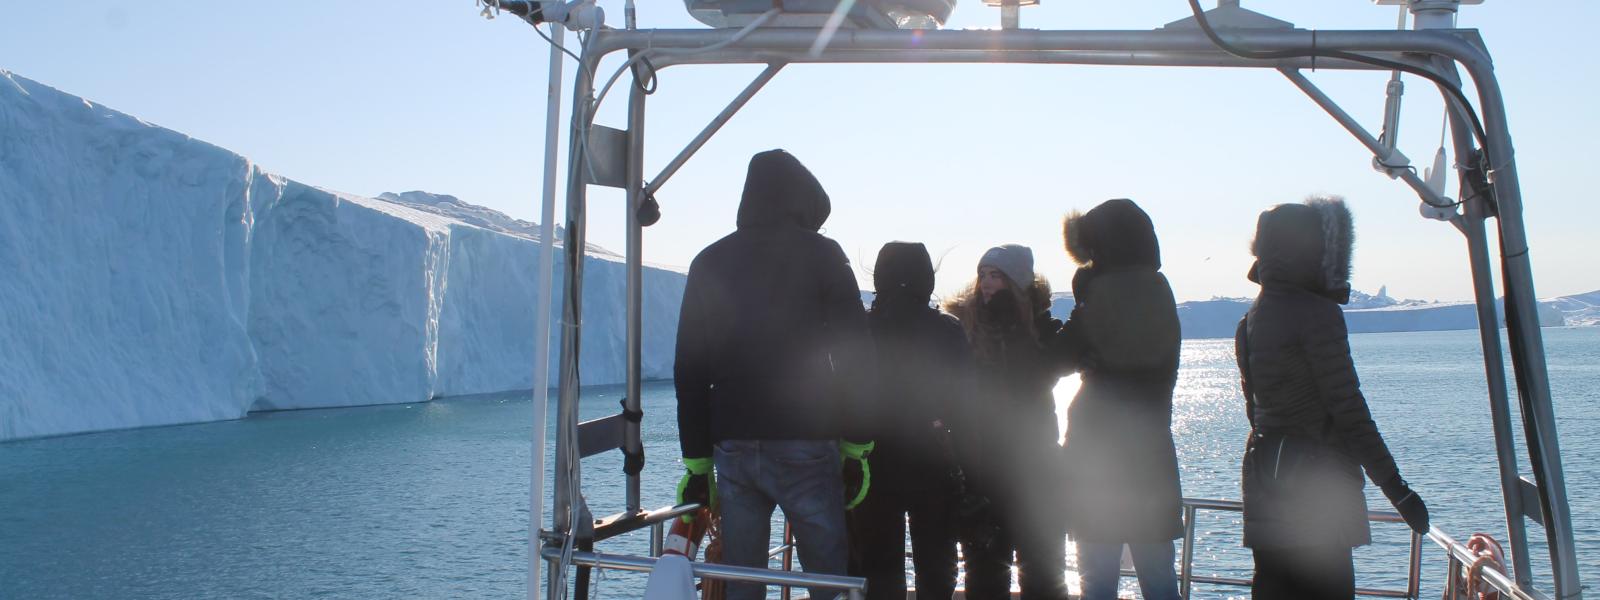 Fem elever står på en båd, der sejler i en fjord. Der er store isbjerge til venstre for dem.